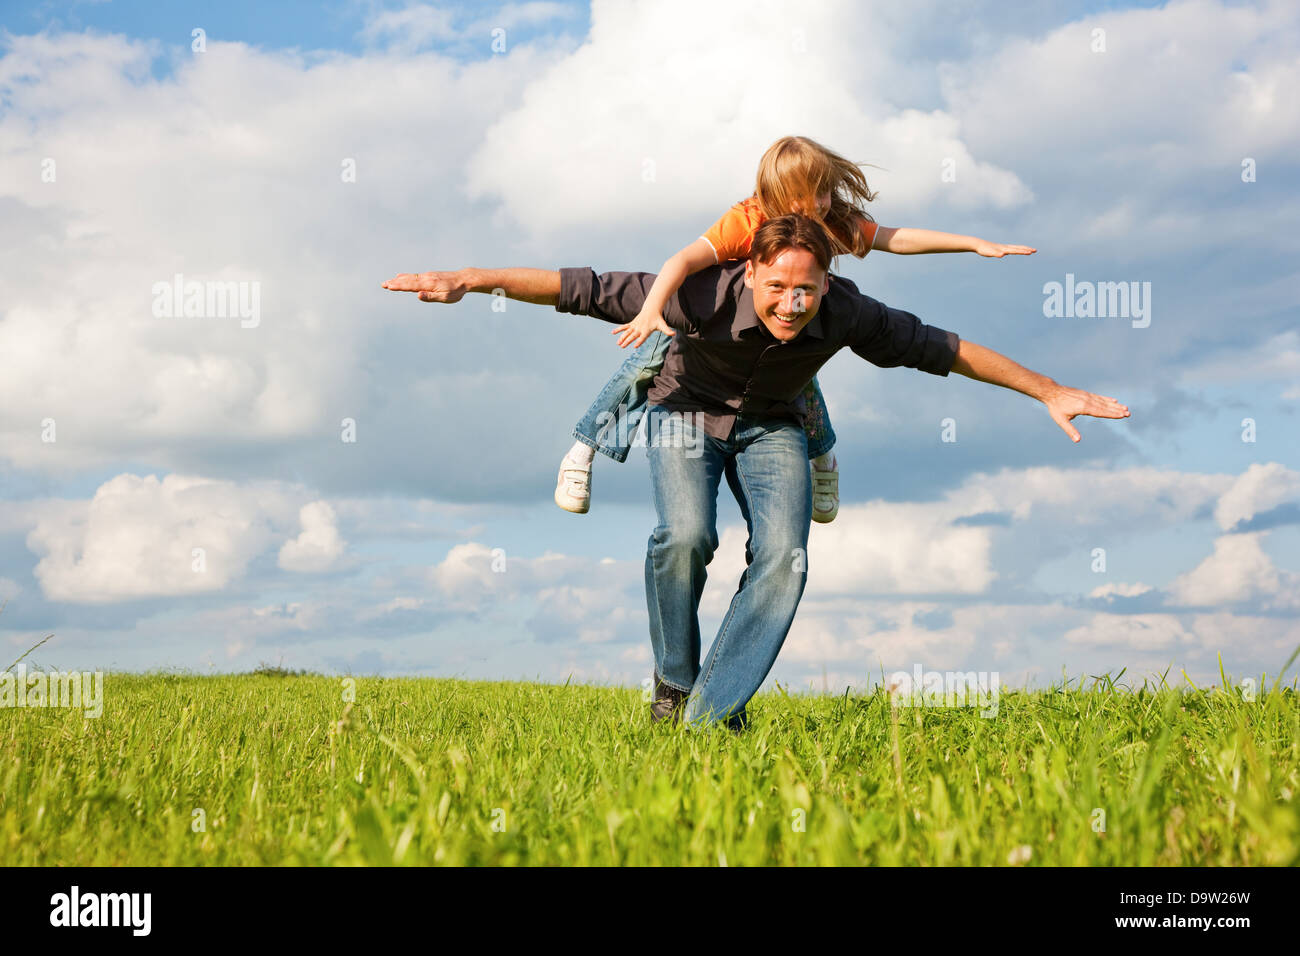 Vater und sein Kind - Tochter - zusammen auf einer Wiese zu spielen, ist er ihr Huckepack tragen. Stockfoto